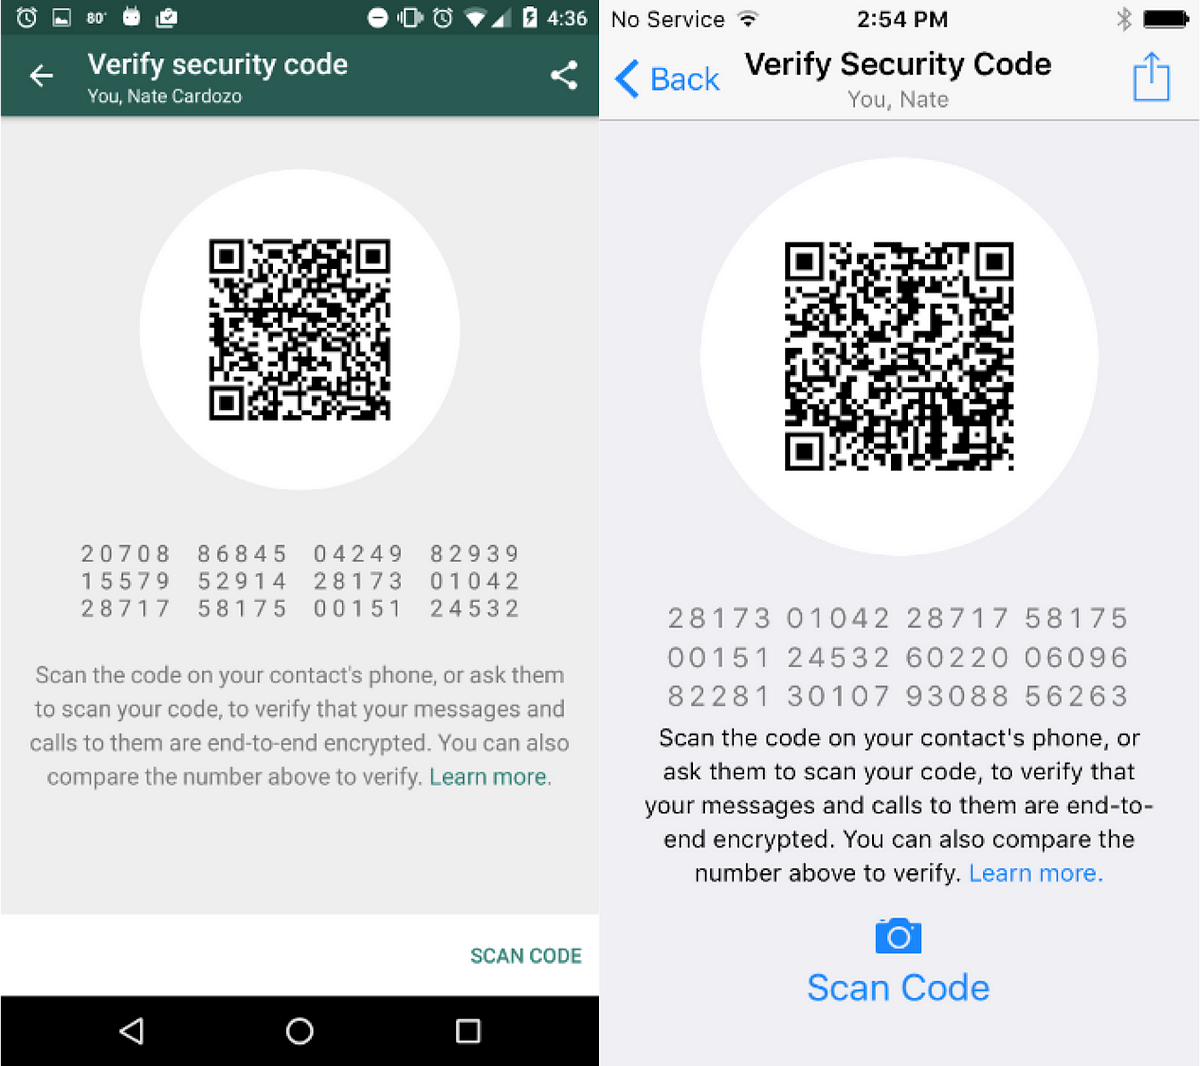 whatsapp verification code generator